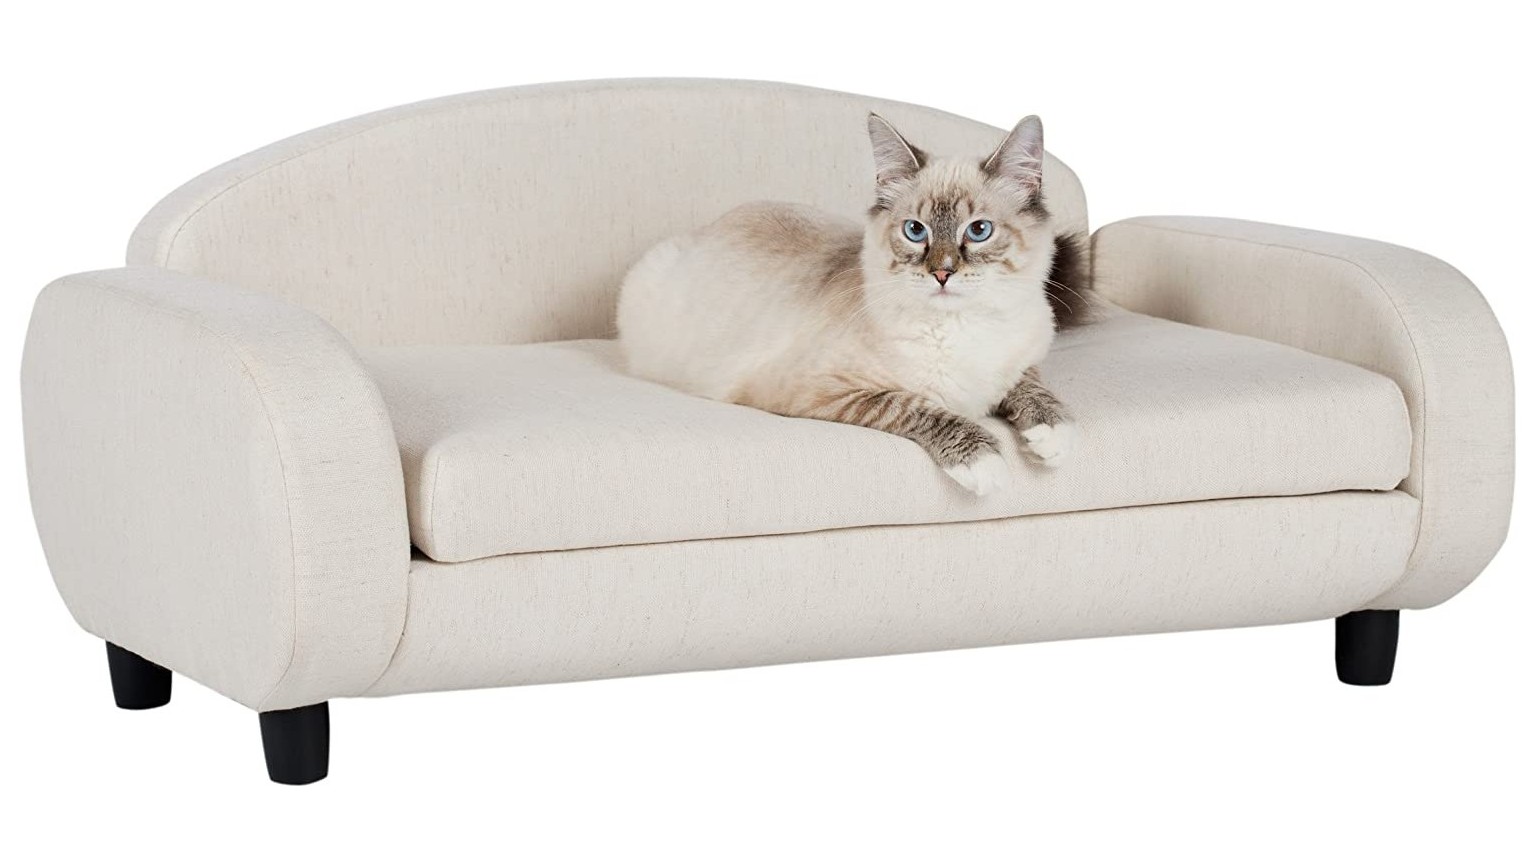 Cat sofa оригинал купить. Cat Sofa кроссовки. Кэт софа Кэт софа. Cat Sofa дутыши. Кресло для кошки.